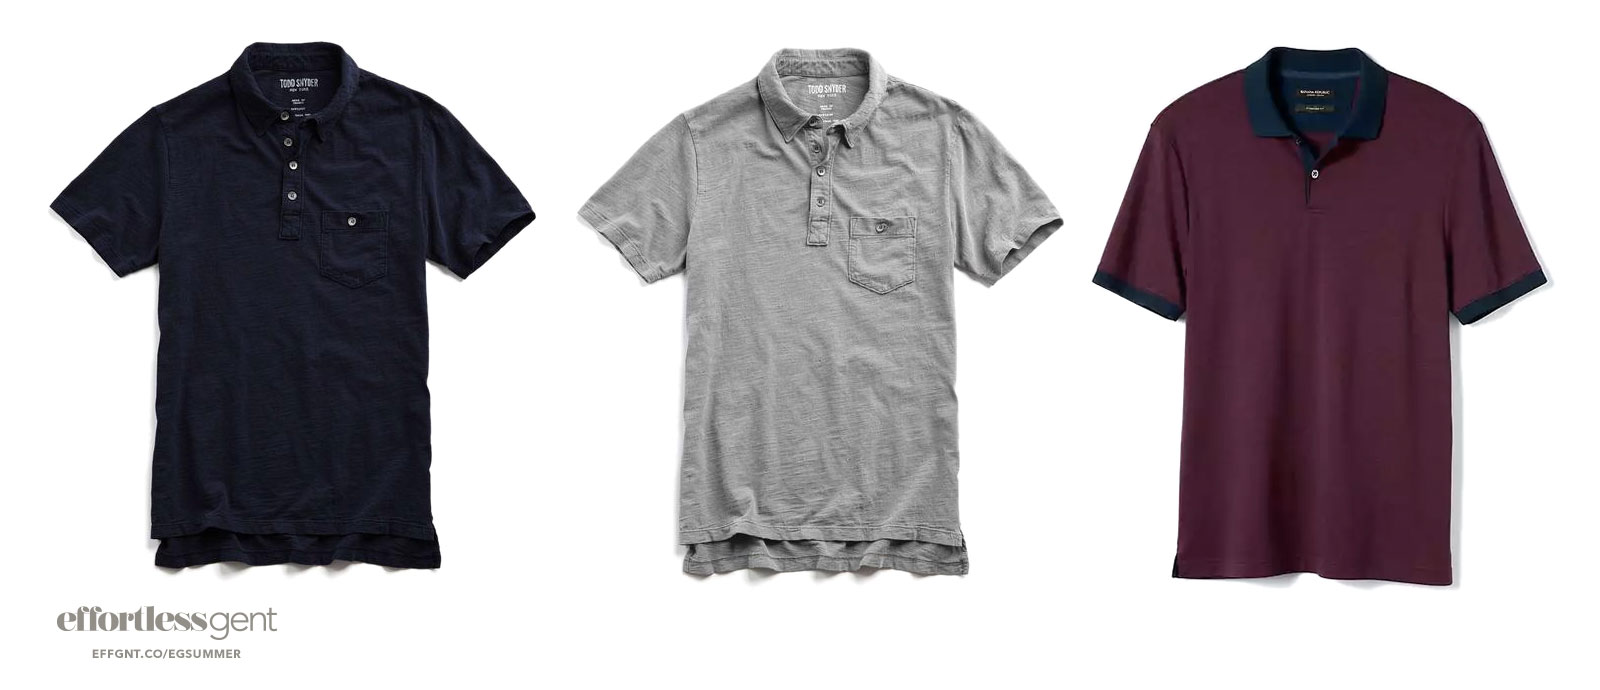 the best short sleeve shirts for men - effortless gent